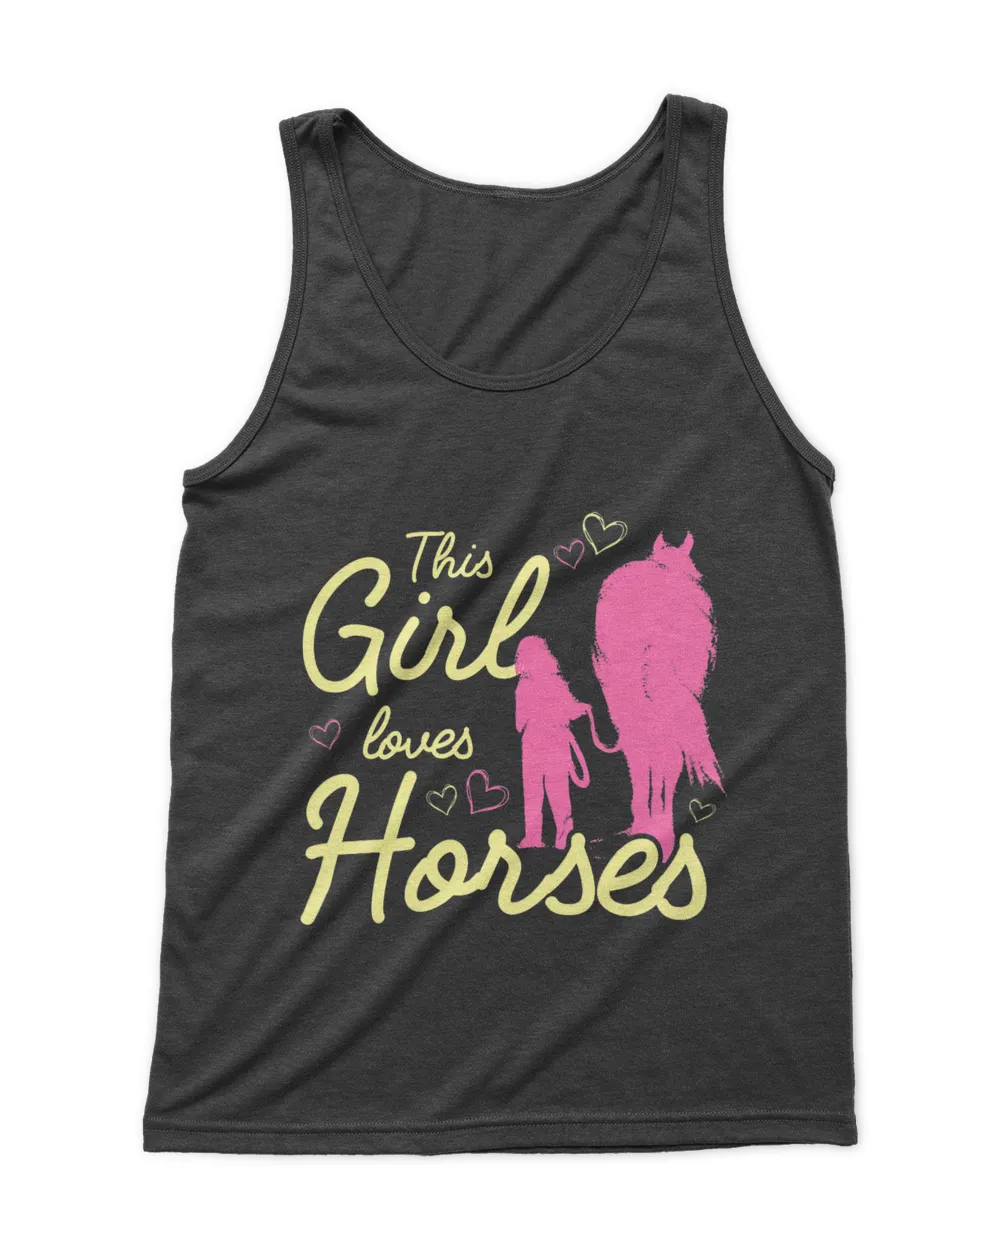 This Girl Loves Horses